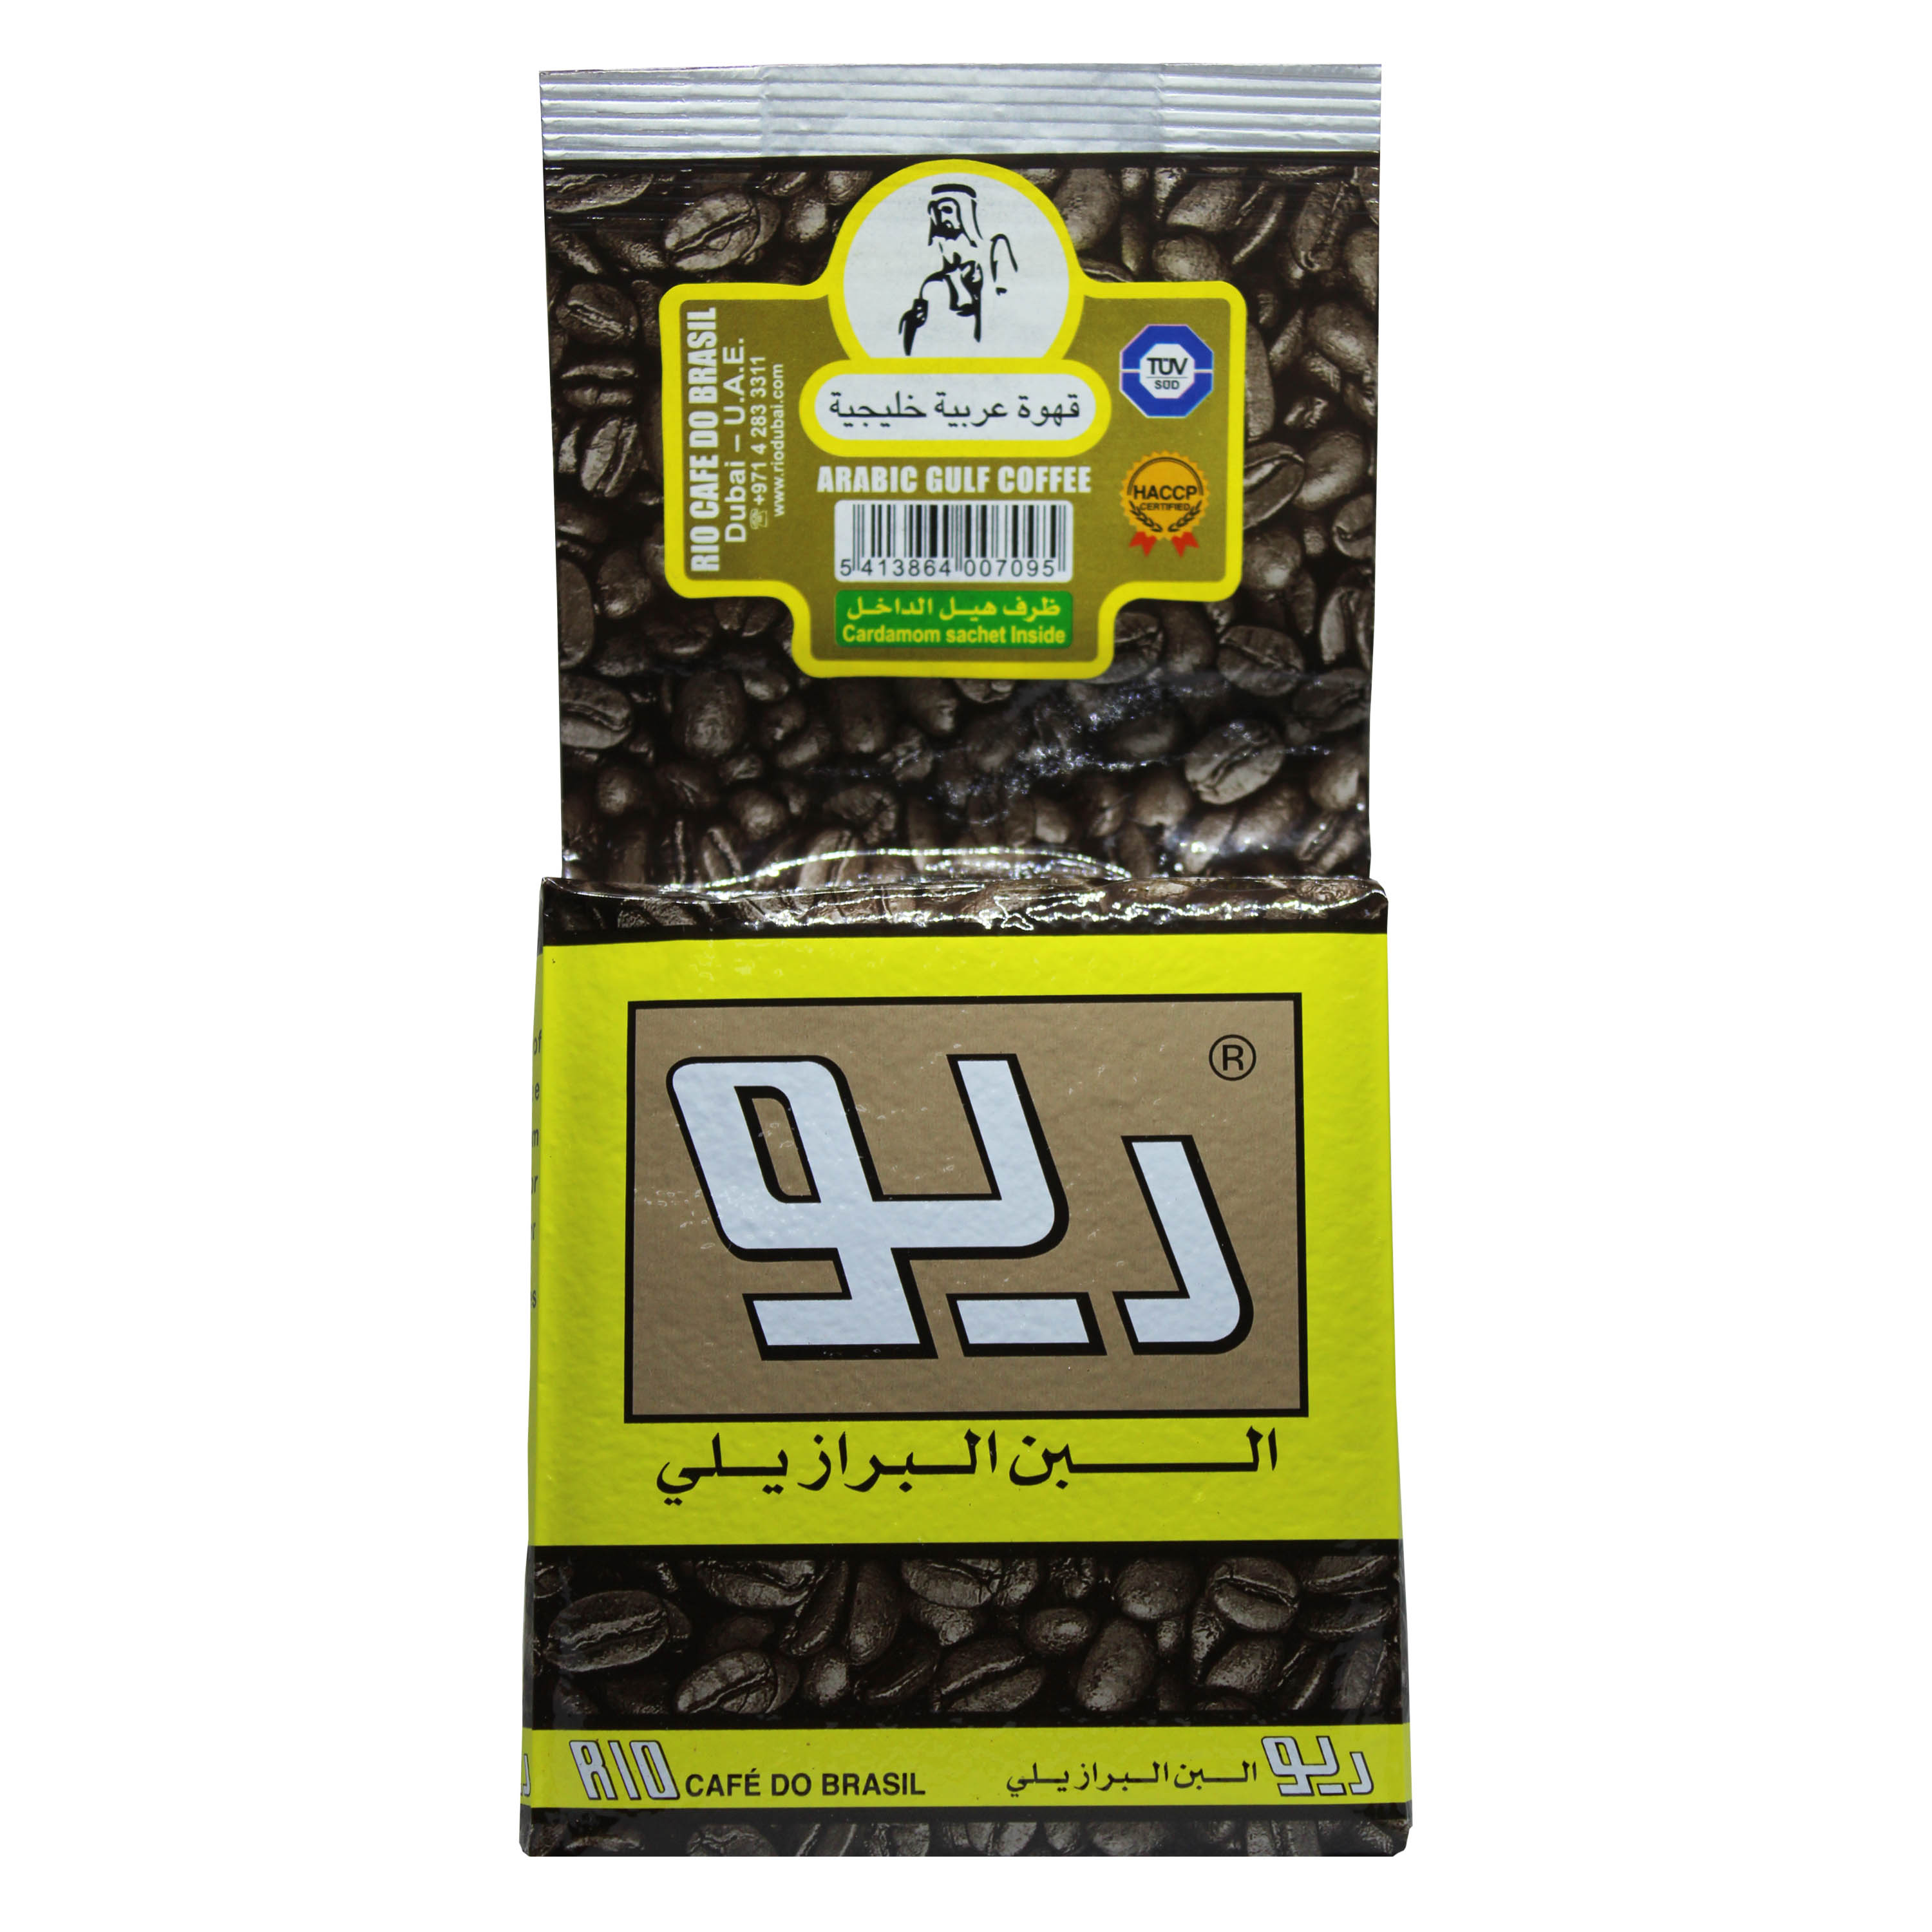 Arabic Gulf Coffee